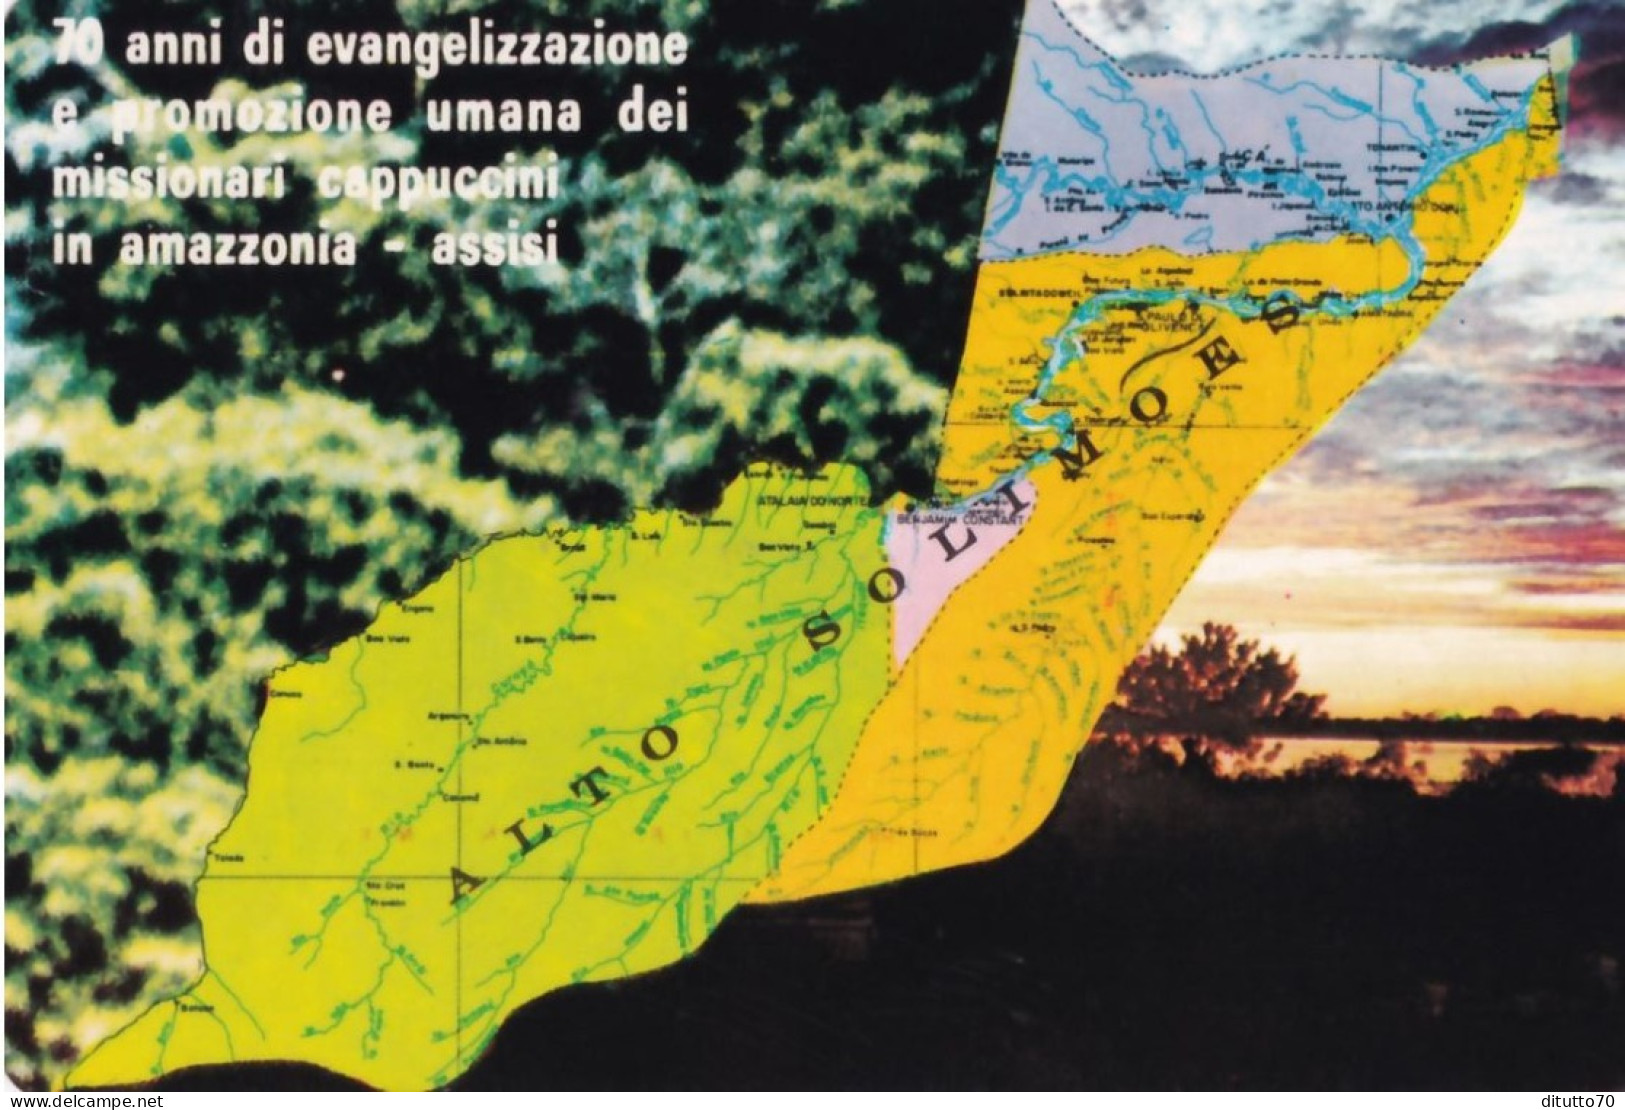 Calendarietto - Missione Cappuccini Amazzonia - Assisi - Anno 1980 - Tamaño Pequeño : 1971-80